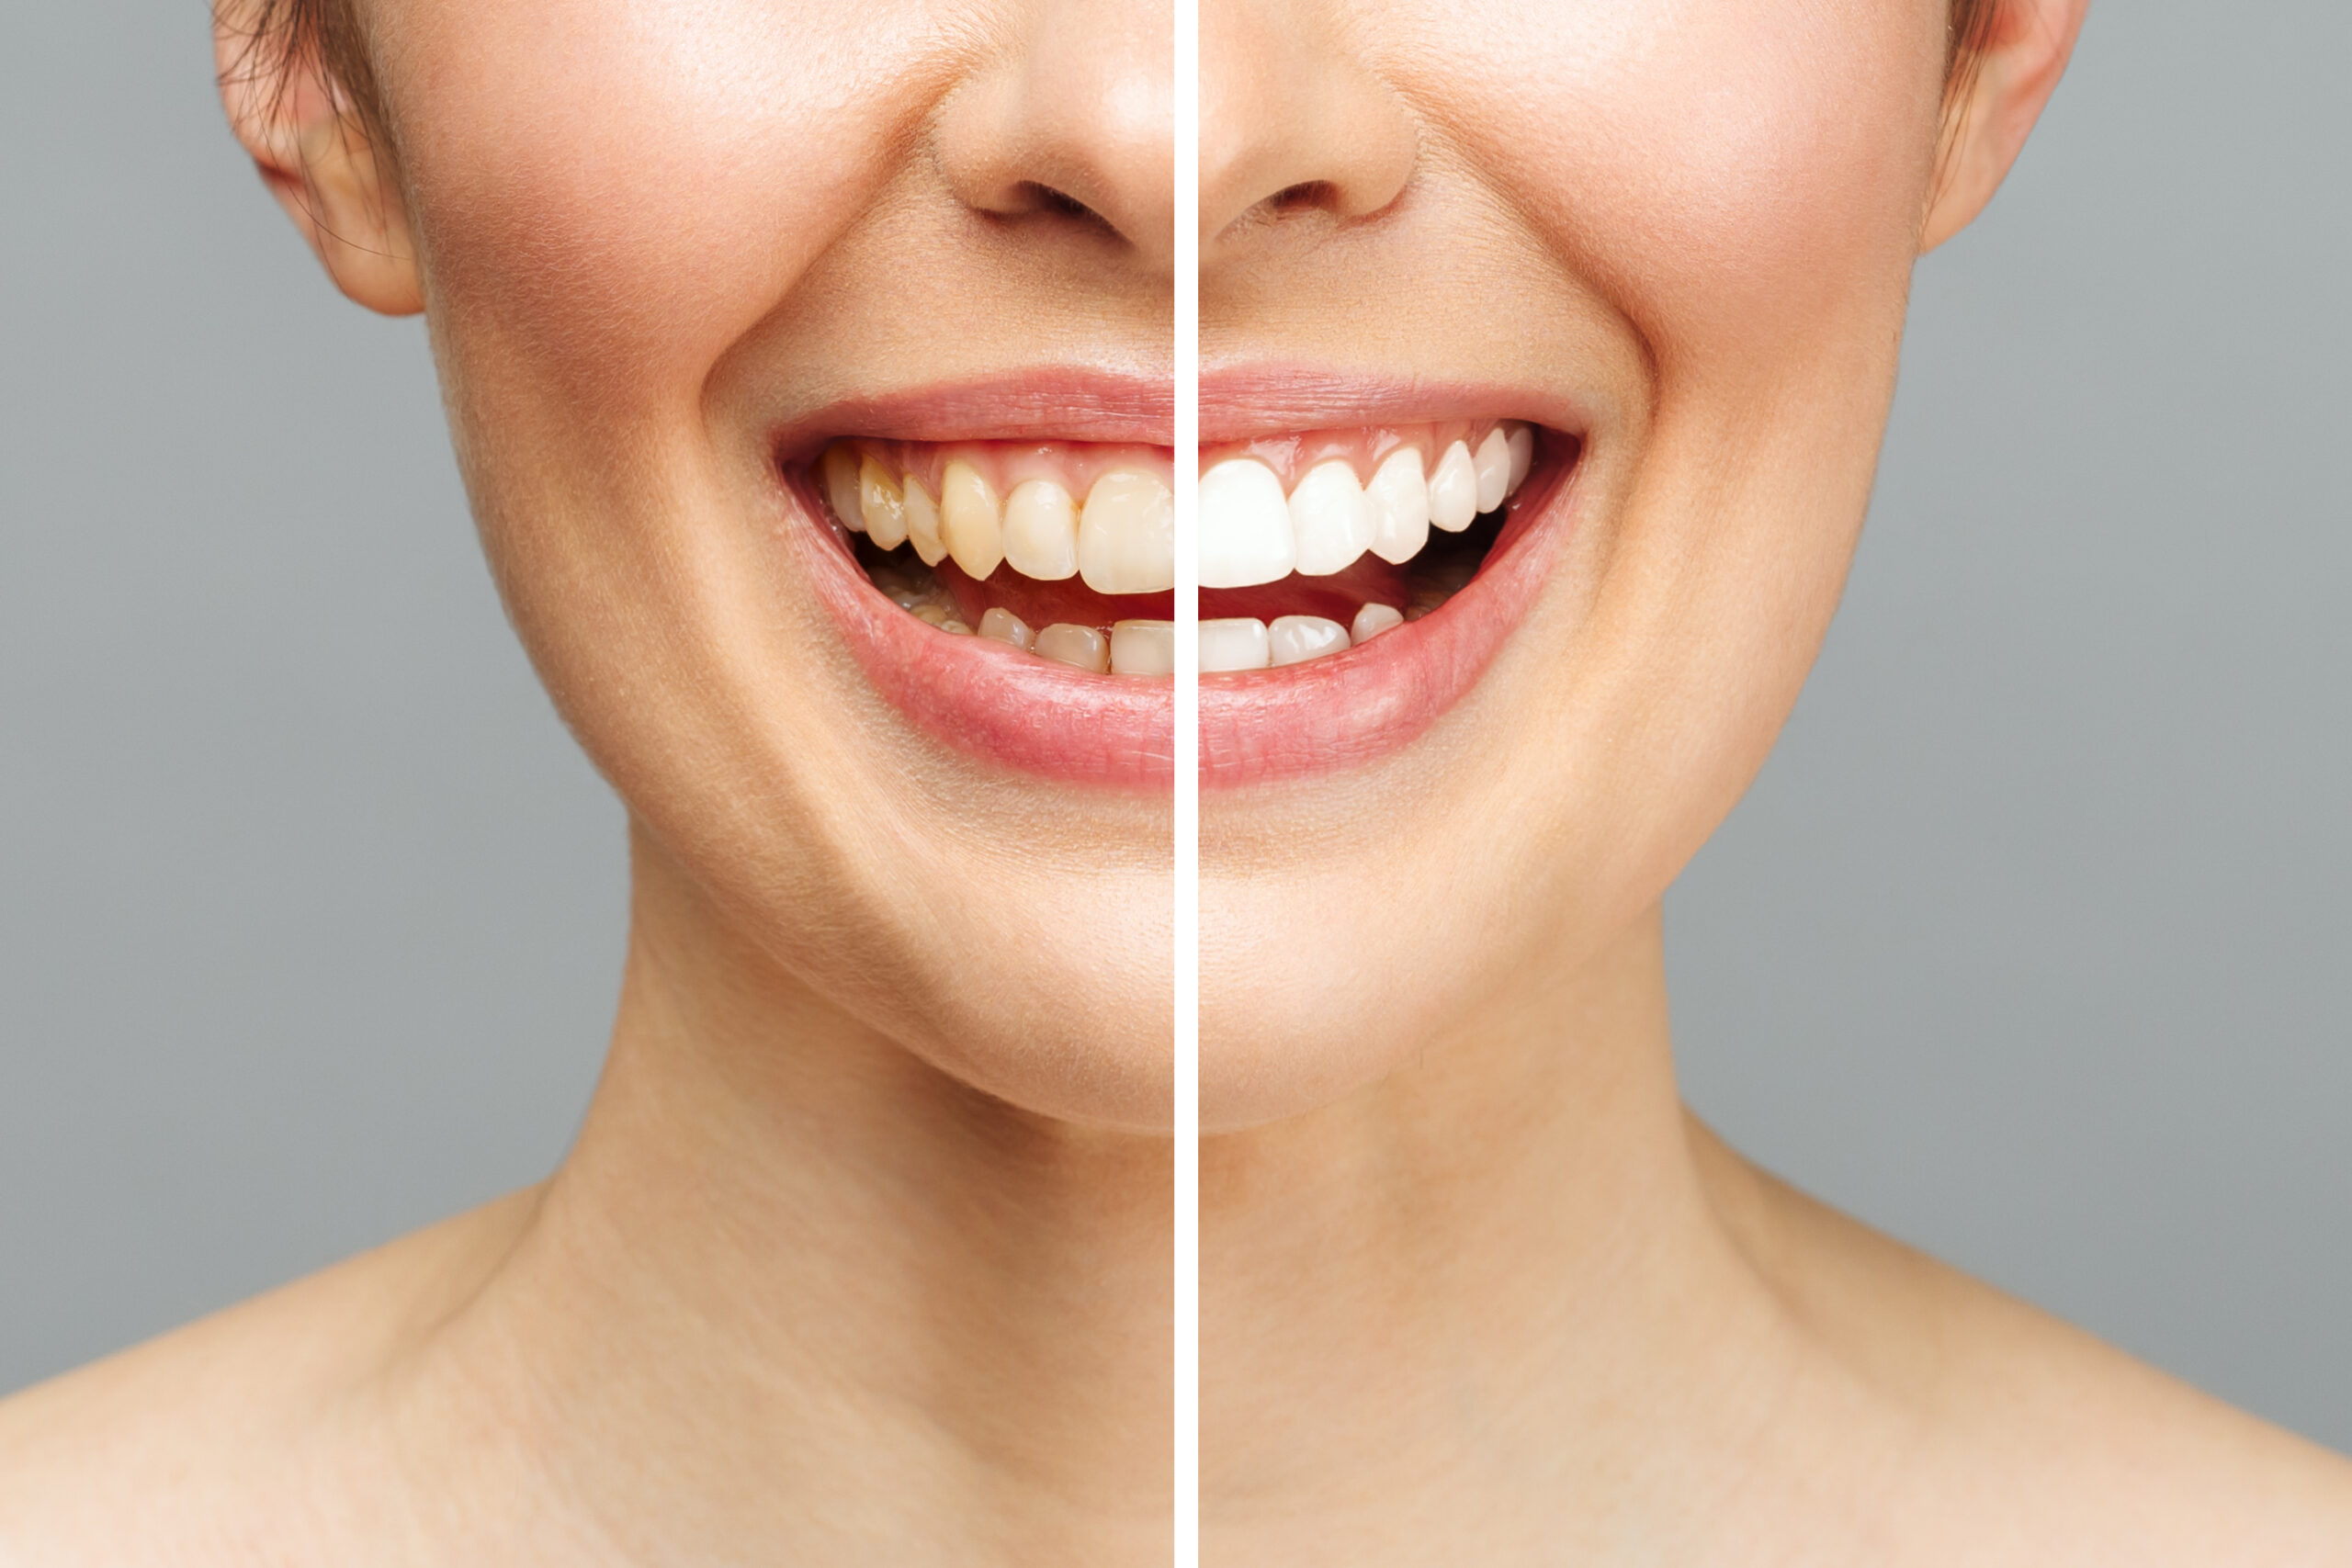 Teeth Whitening vs Veneers